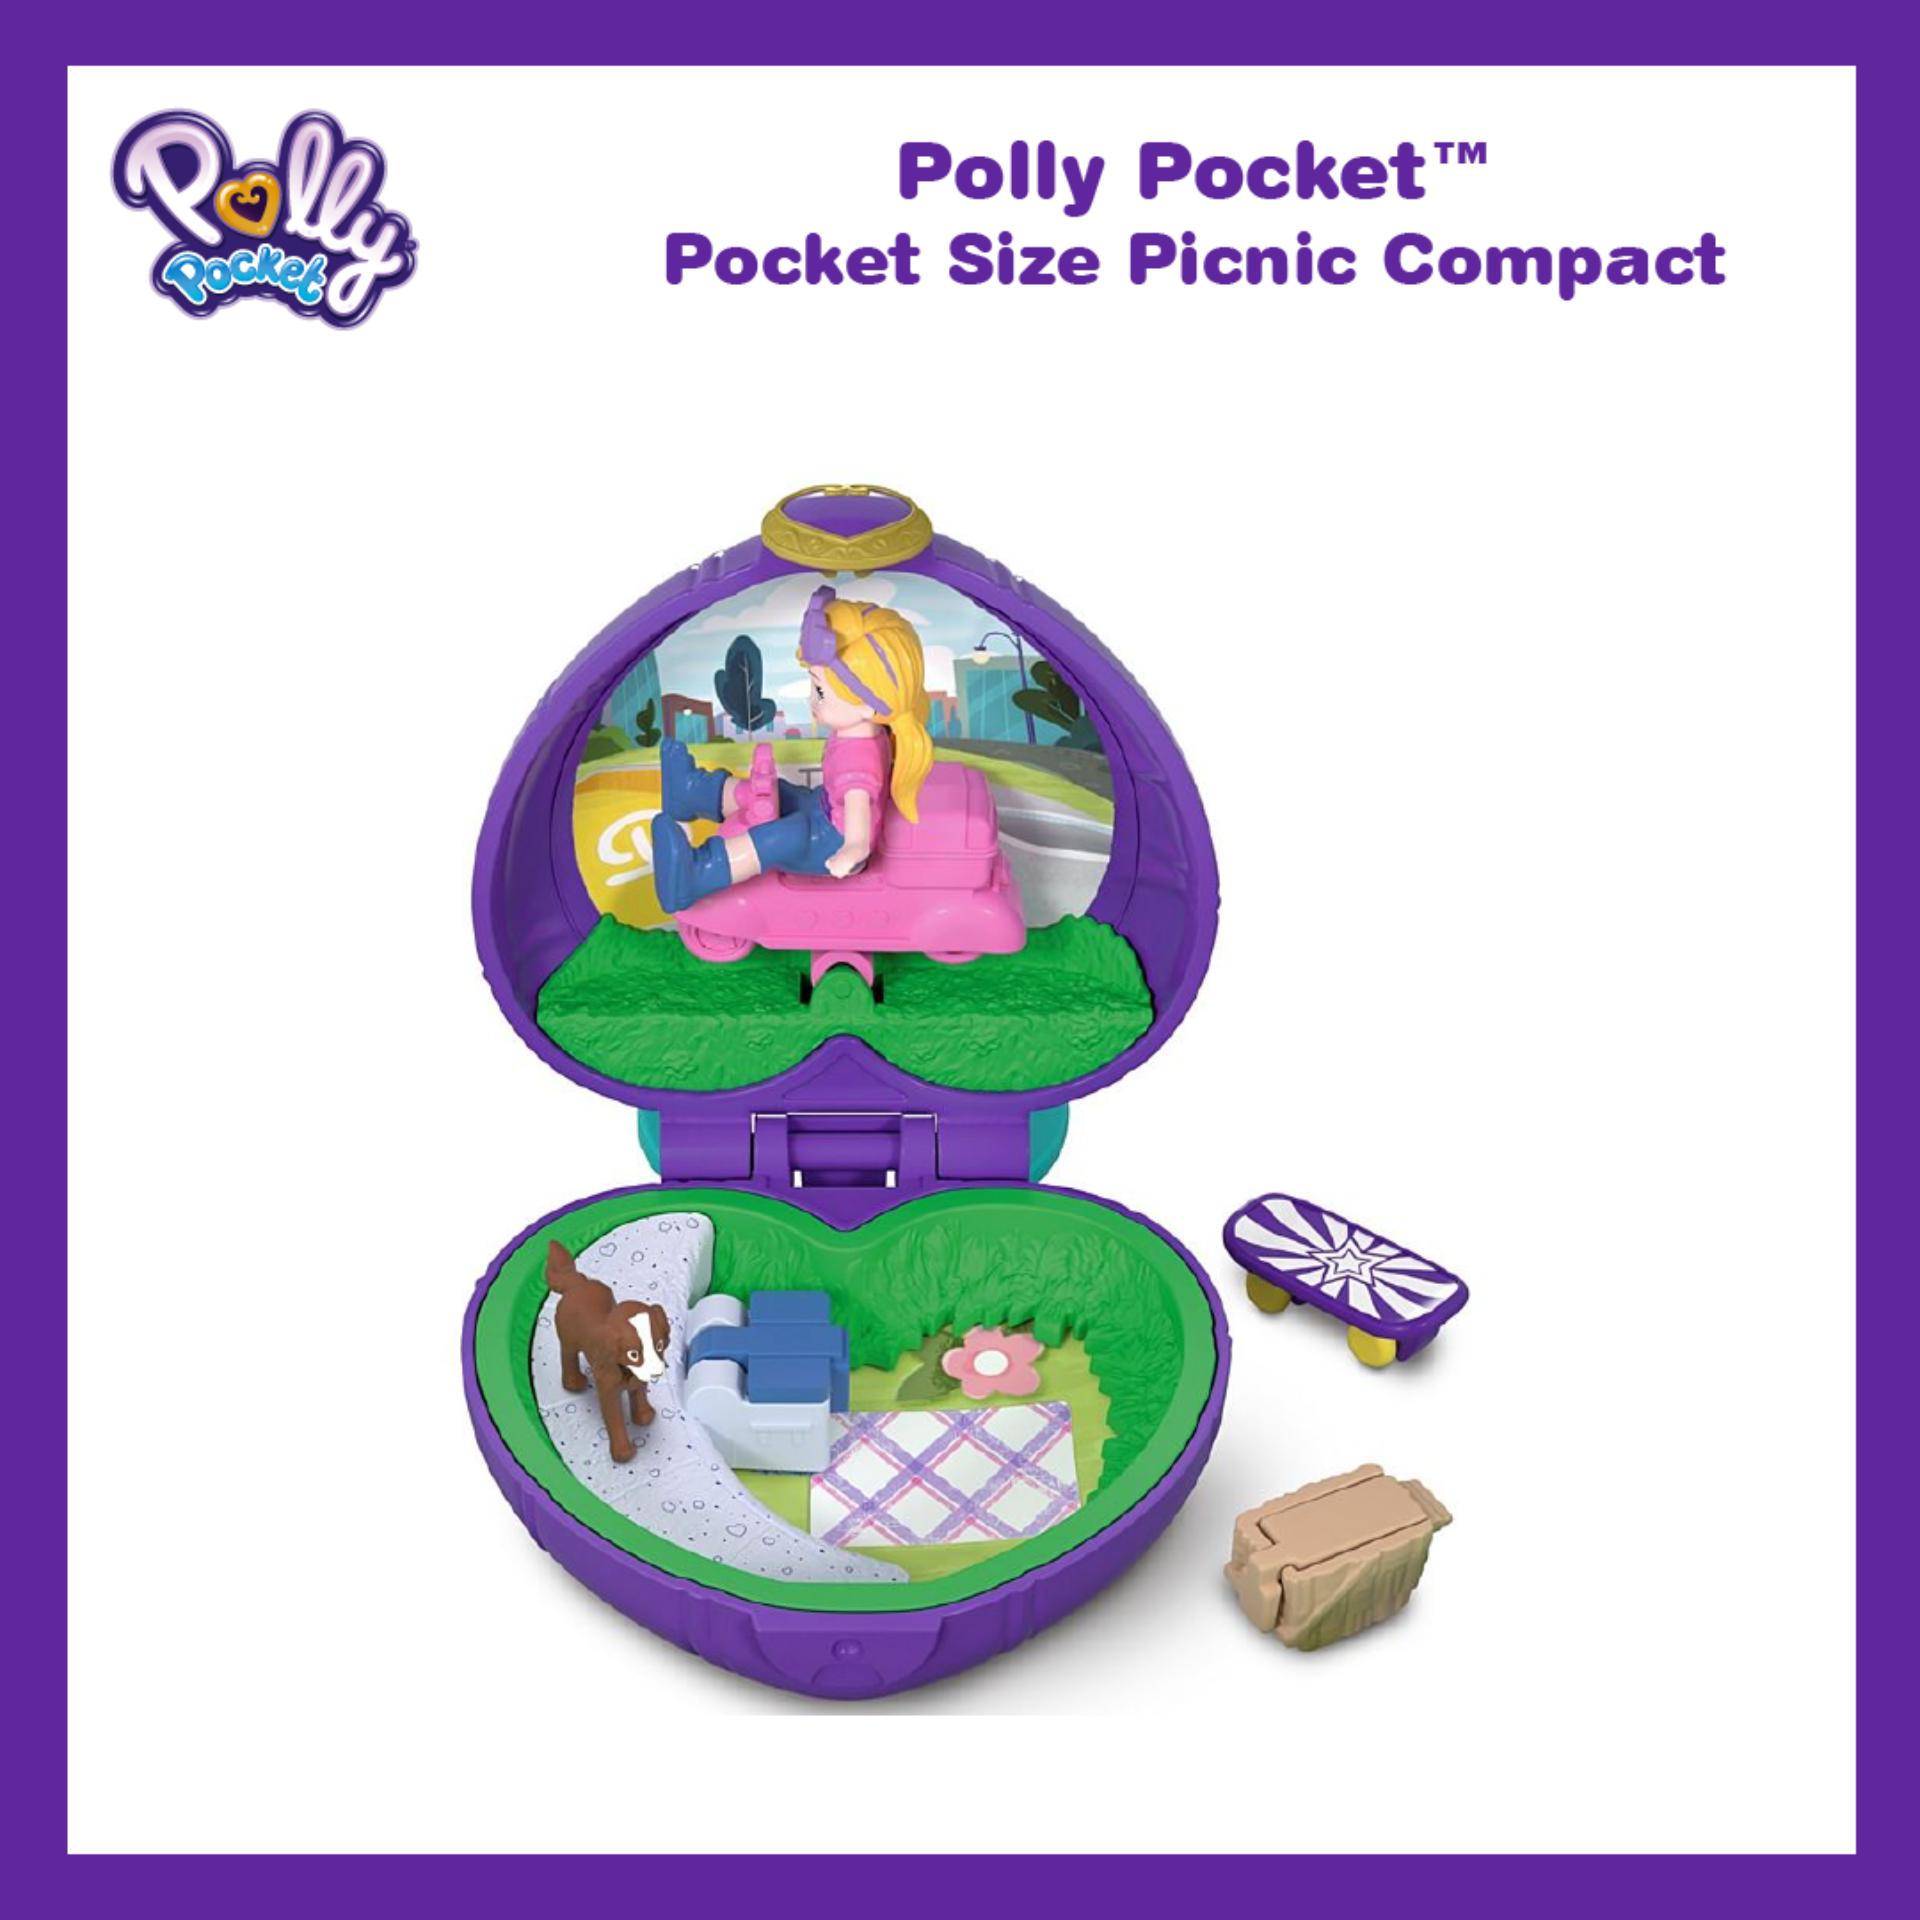 Polly Pocket™ Pocket Size Picnic Compact ตุ๊กตา พอลลี่ พ็อคเก็ต ไซส์ ปิกนิก คอมเเพ็ค ของเล่นเด็ก ขนาดพกพา